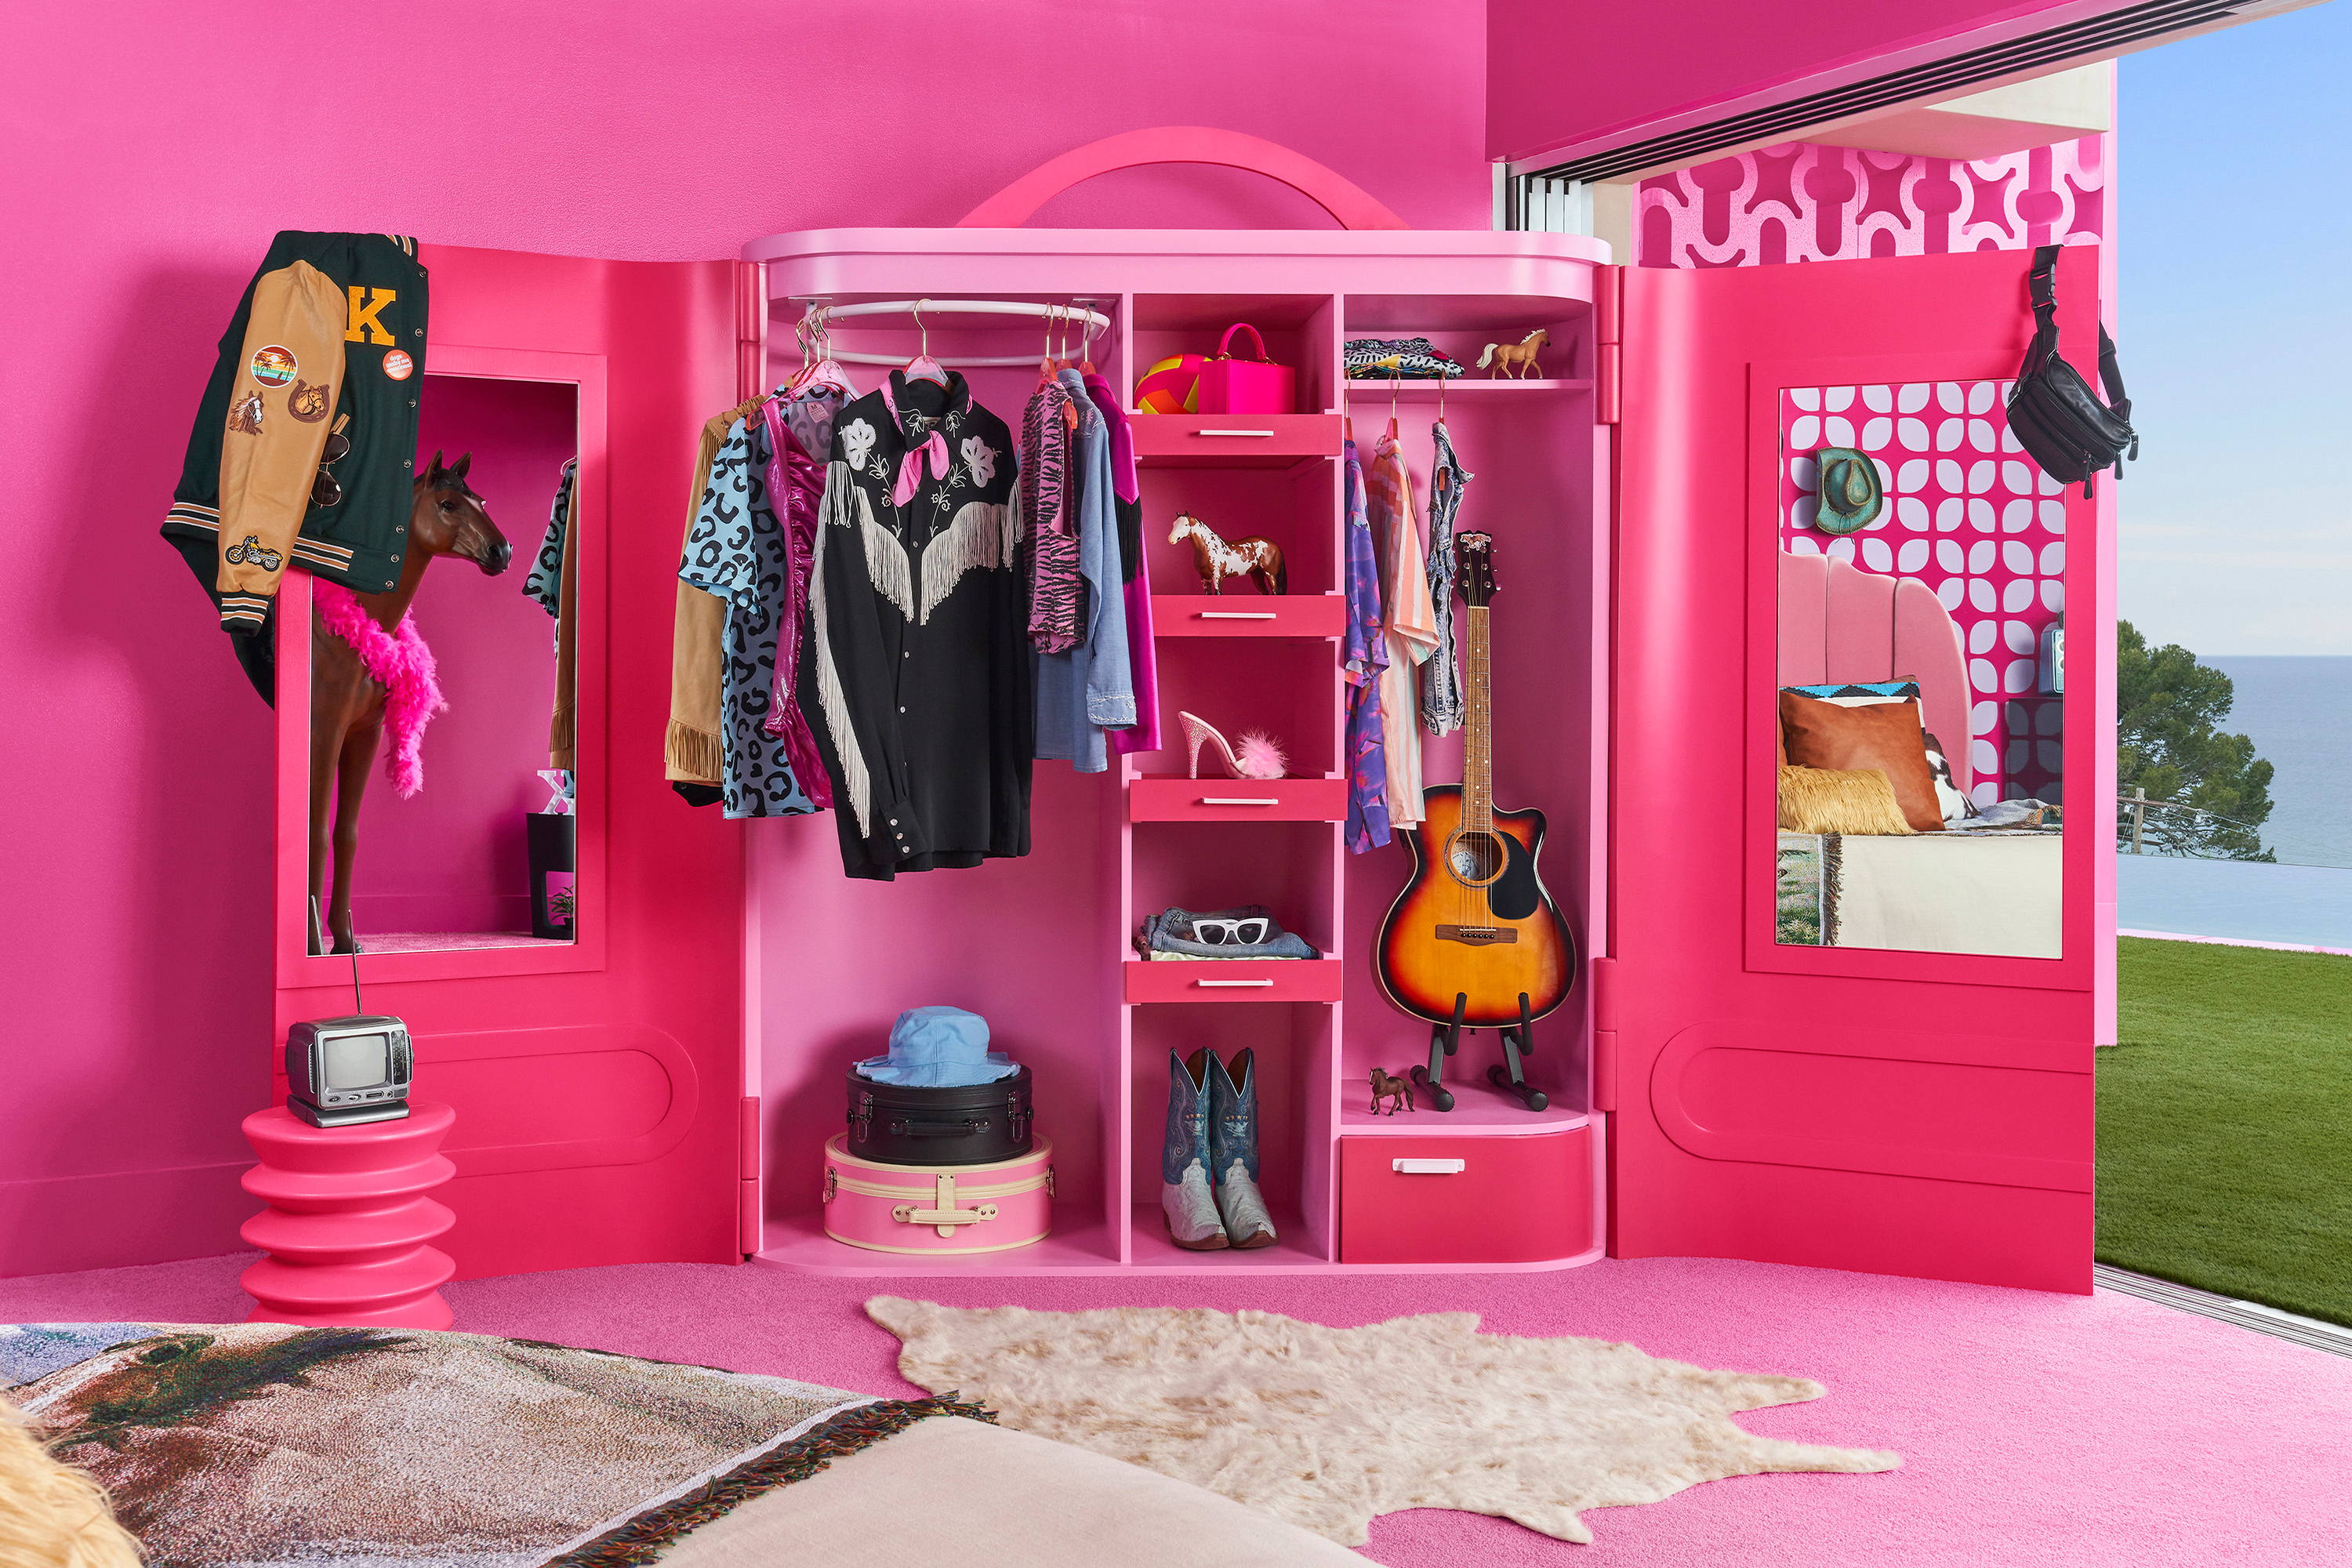 Let Brinquedos - Com a Casa dos Sonhos da Barbie da